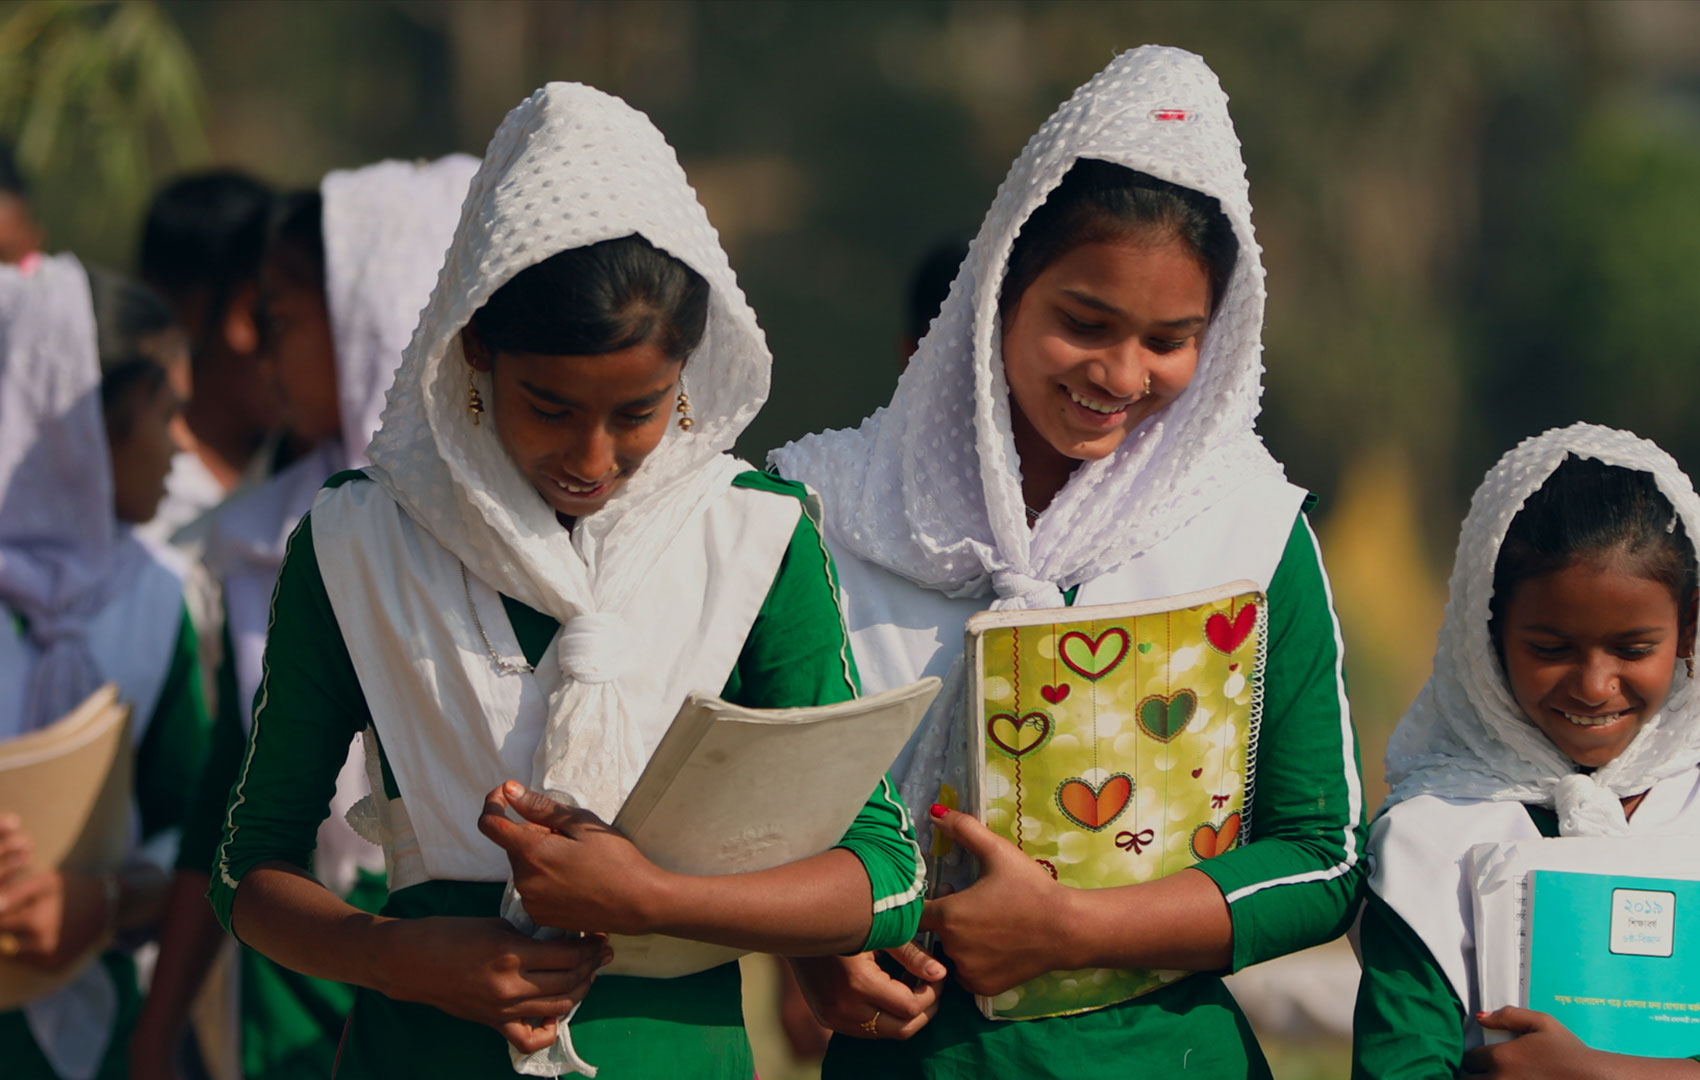 Lachende Mädchen mit Schulblöcken in der Hand. Sie kommen nicht aus Europa; zur Schuluniform gehören unter anderem weiße Kopftücher.